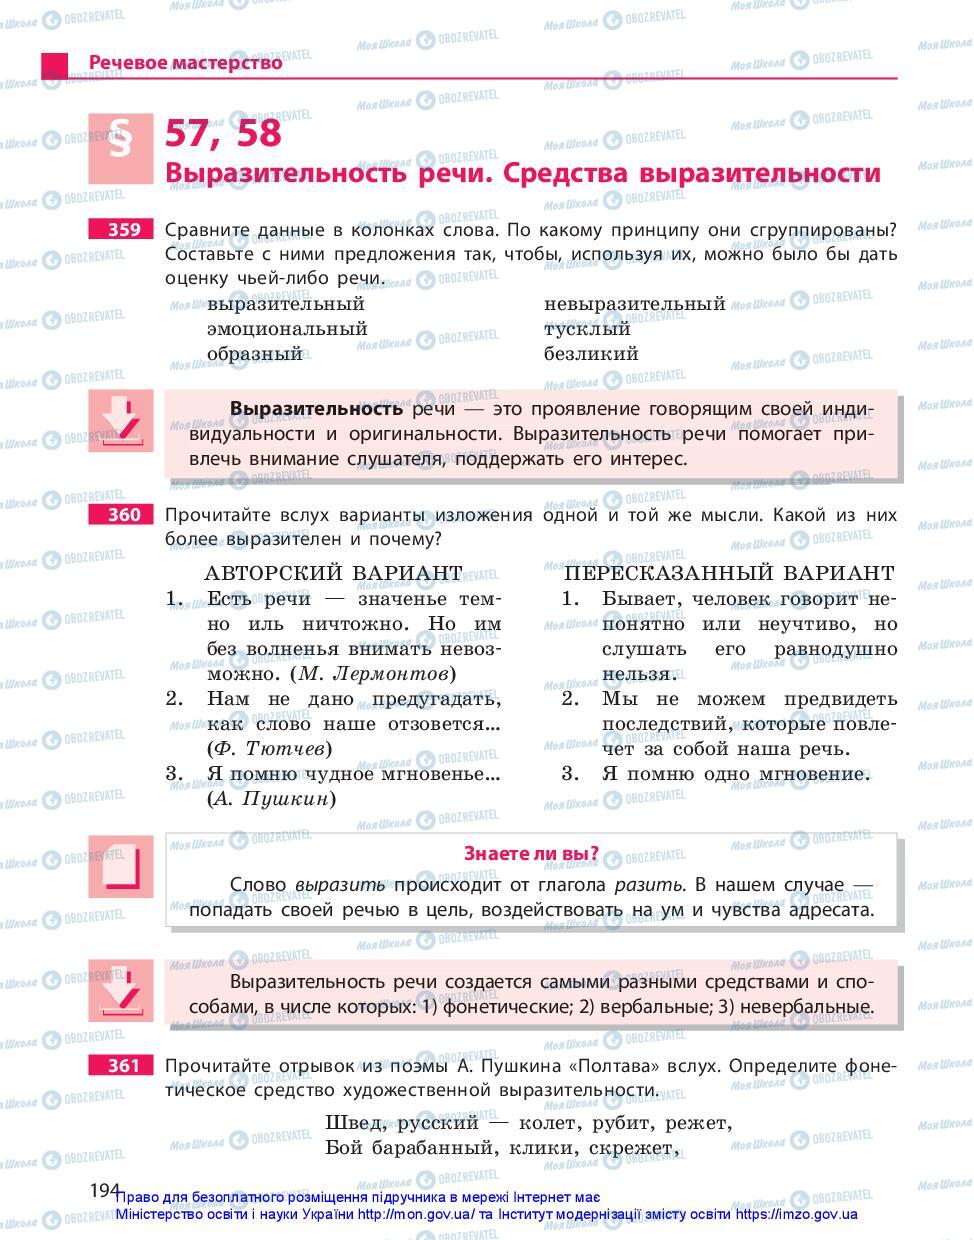 Учебники Русский язык 11 класс страница 194